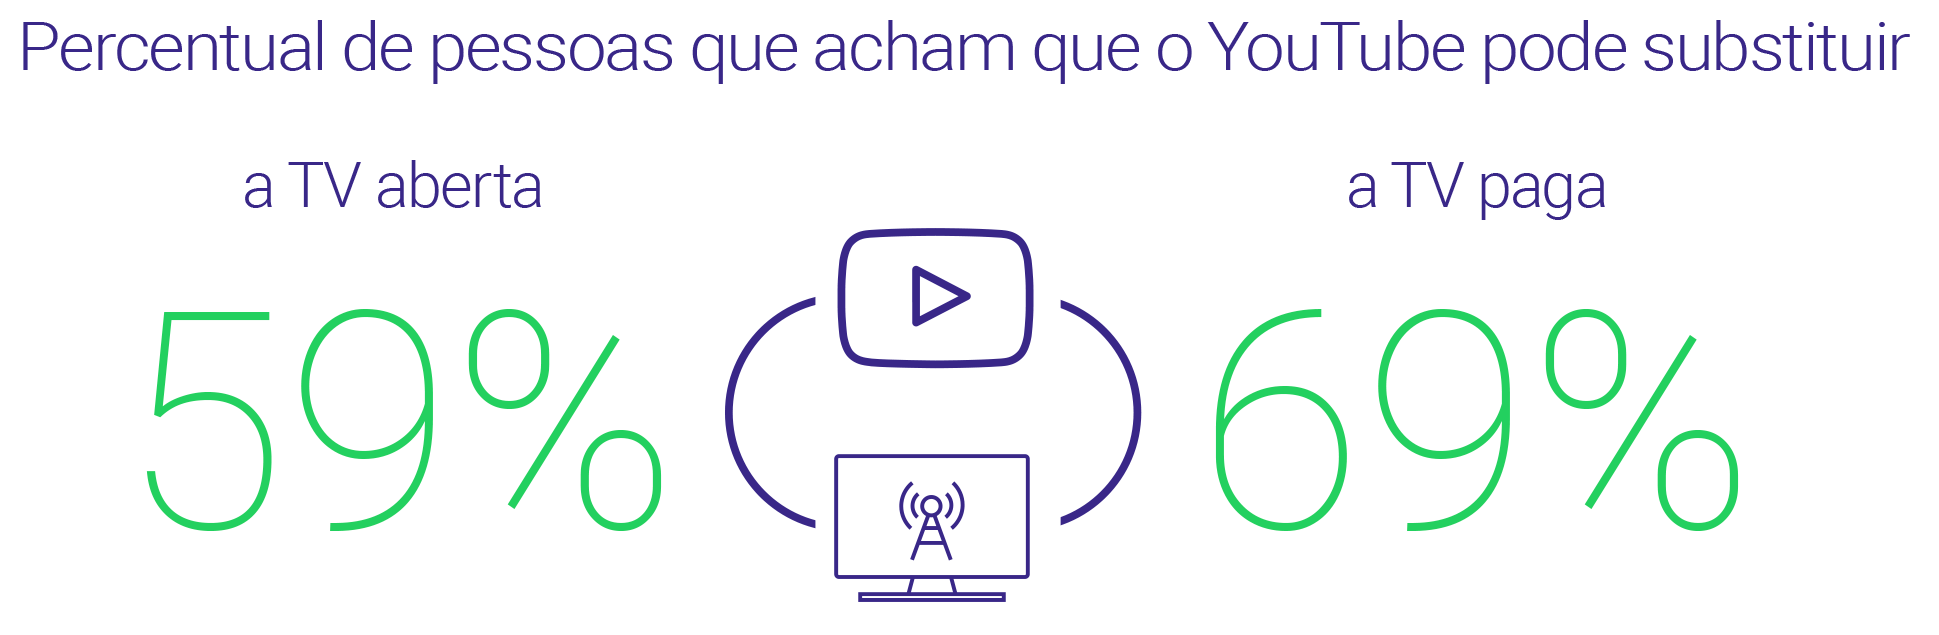 Pesquisa Video Viewers: brasileiros e a produção de vídeo 